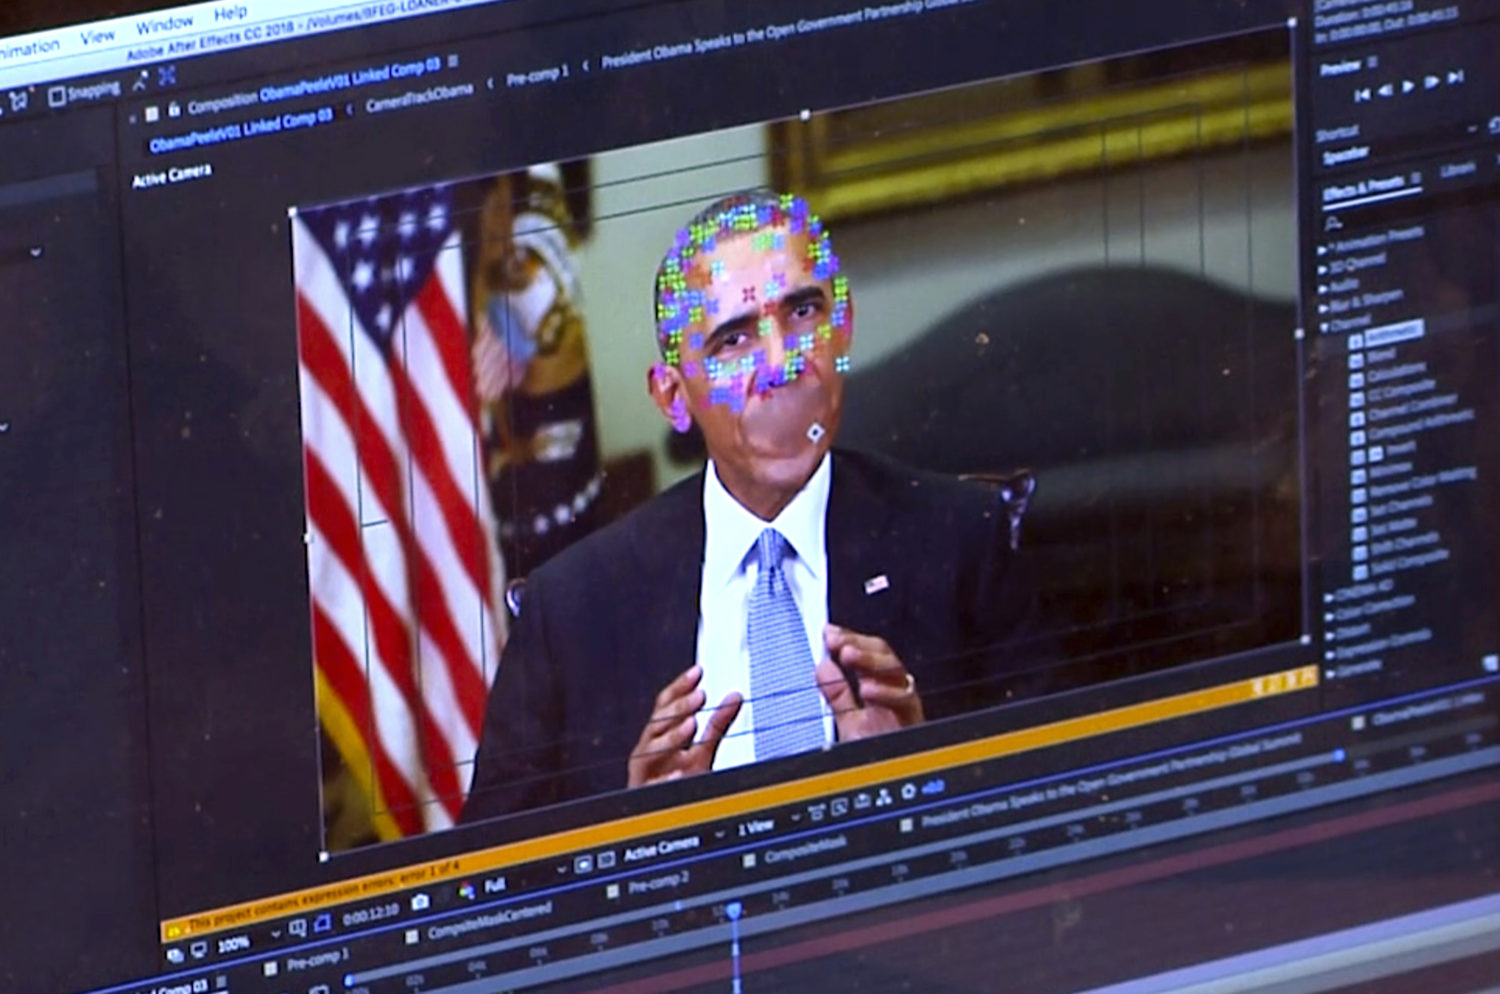 Hình ảnh này được tạo ra từ video của một video giả có cựu Tổng thống Barack Obama cho thấy các yếu tố lập bản đồ khuôn mặt được sử dụng trong công nghệ mới cho phép bất cứ ai làm video người thật xuất hiện để nói những điều họ chưa từng nói. (Nguồn: AP)